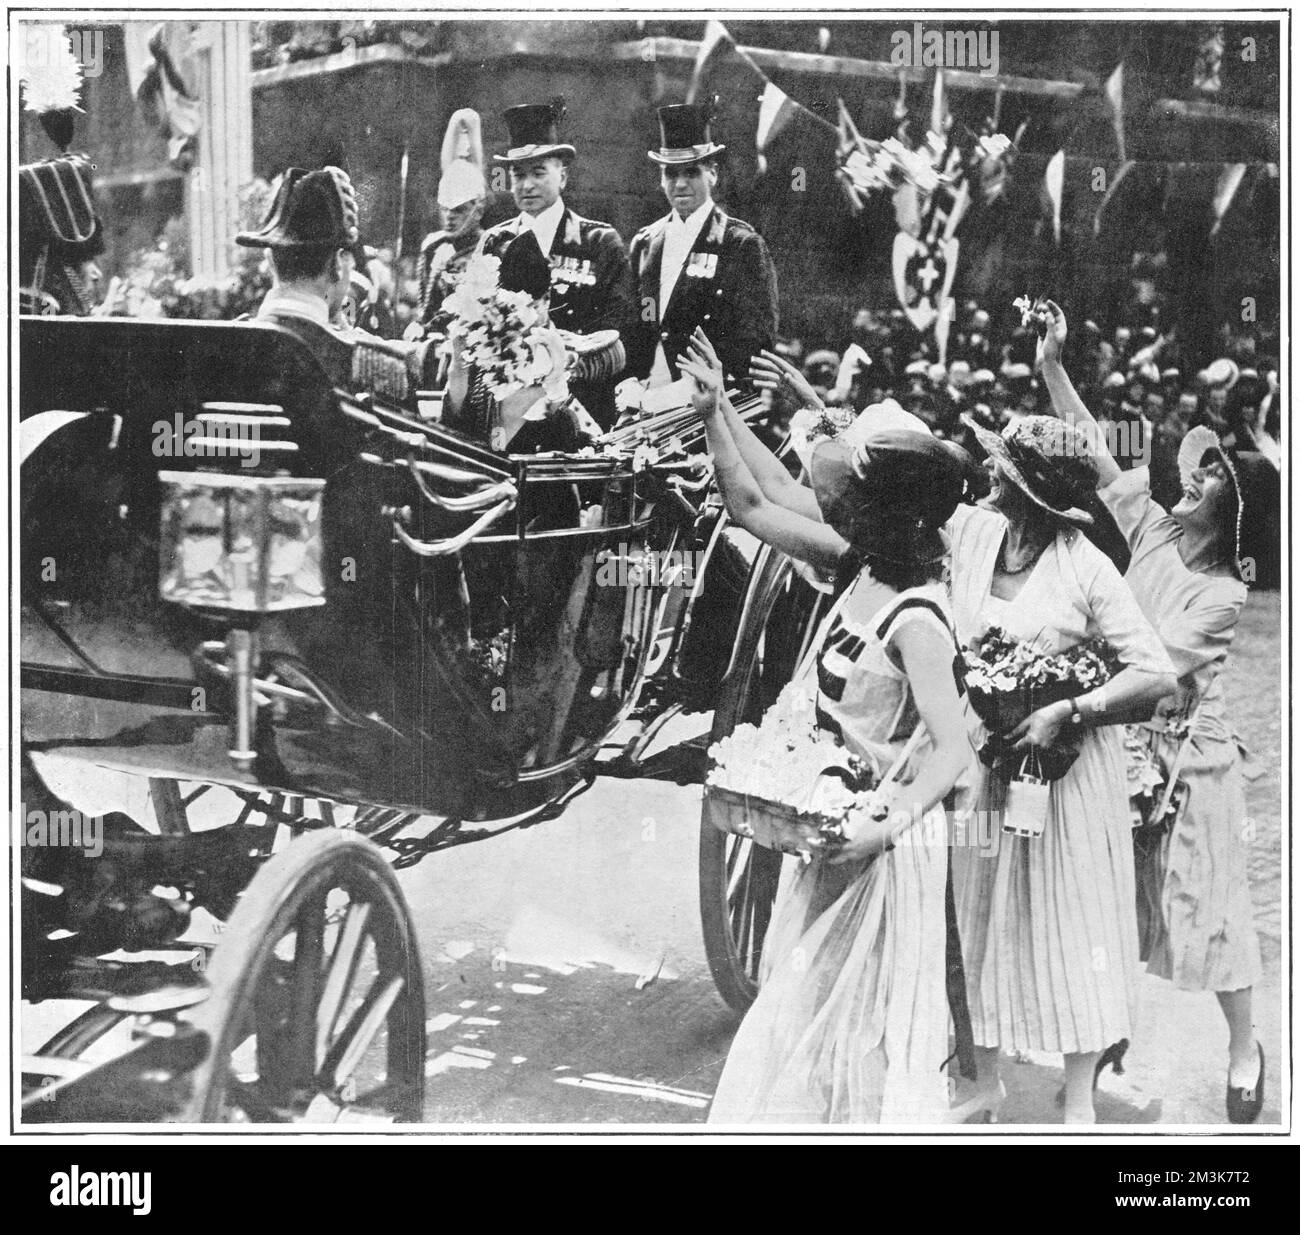 Edward, Prinz von Wales, später König Edward VIII. Und Herzog von Windsor, schnappte sich humorvoll einen Strauß, während er während des Alexandra Rose Day 1922 in einer Kutsche fuhr. Der beliebte Prinz war gerade von einer königlichen Tour zu den jubelnden Menschenmassen in England zurückgekehrt und verließ den Bahnhof Paddington mit König George V., dem Herzog von York und Prinz Henry. Der Alexandra Rose Day wurde von Edwards Großmutter, Königin Alexandra, ins Leben gerufen, um ihr den Jahrestag ihrer Ankunft in Großbritannien zu gedenken und Spenden für wohltätige Zwecke durch den Verkauf von Rosen zu sammeln. Datum: 24.. Juni 1922 Stockfoto